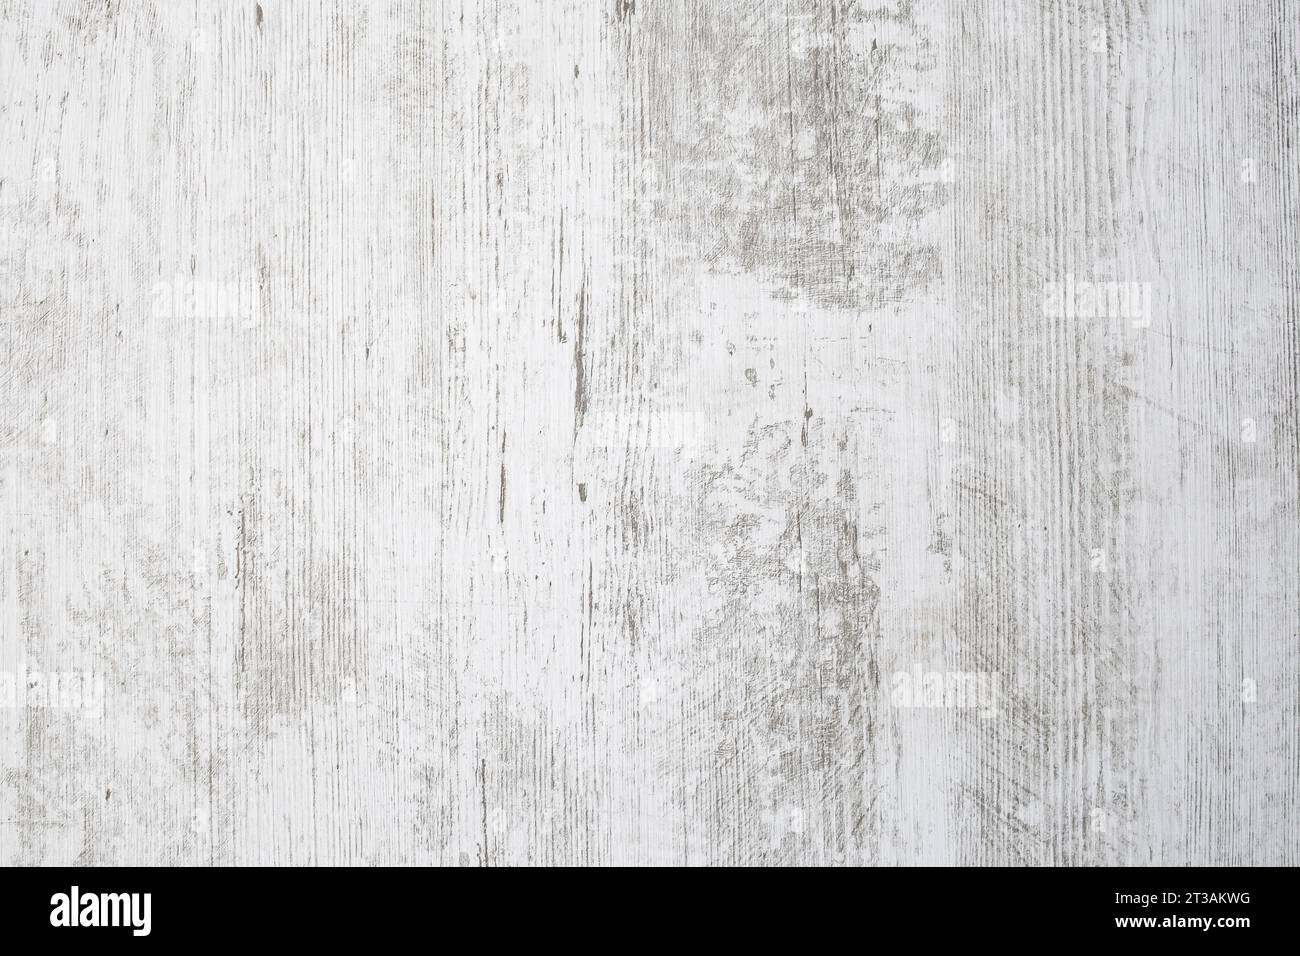 Piano da tavolo bianco con impronta venata grigia, sfondo in legno resistente agli agenti atmosferici, texture astratta e ravvicinata Foto Stock